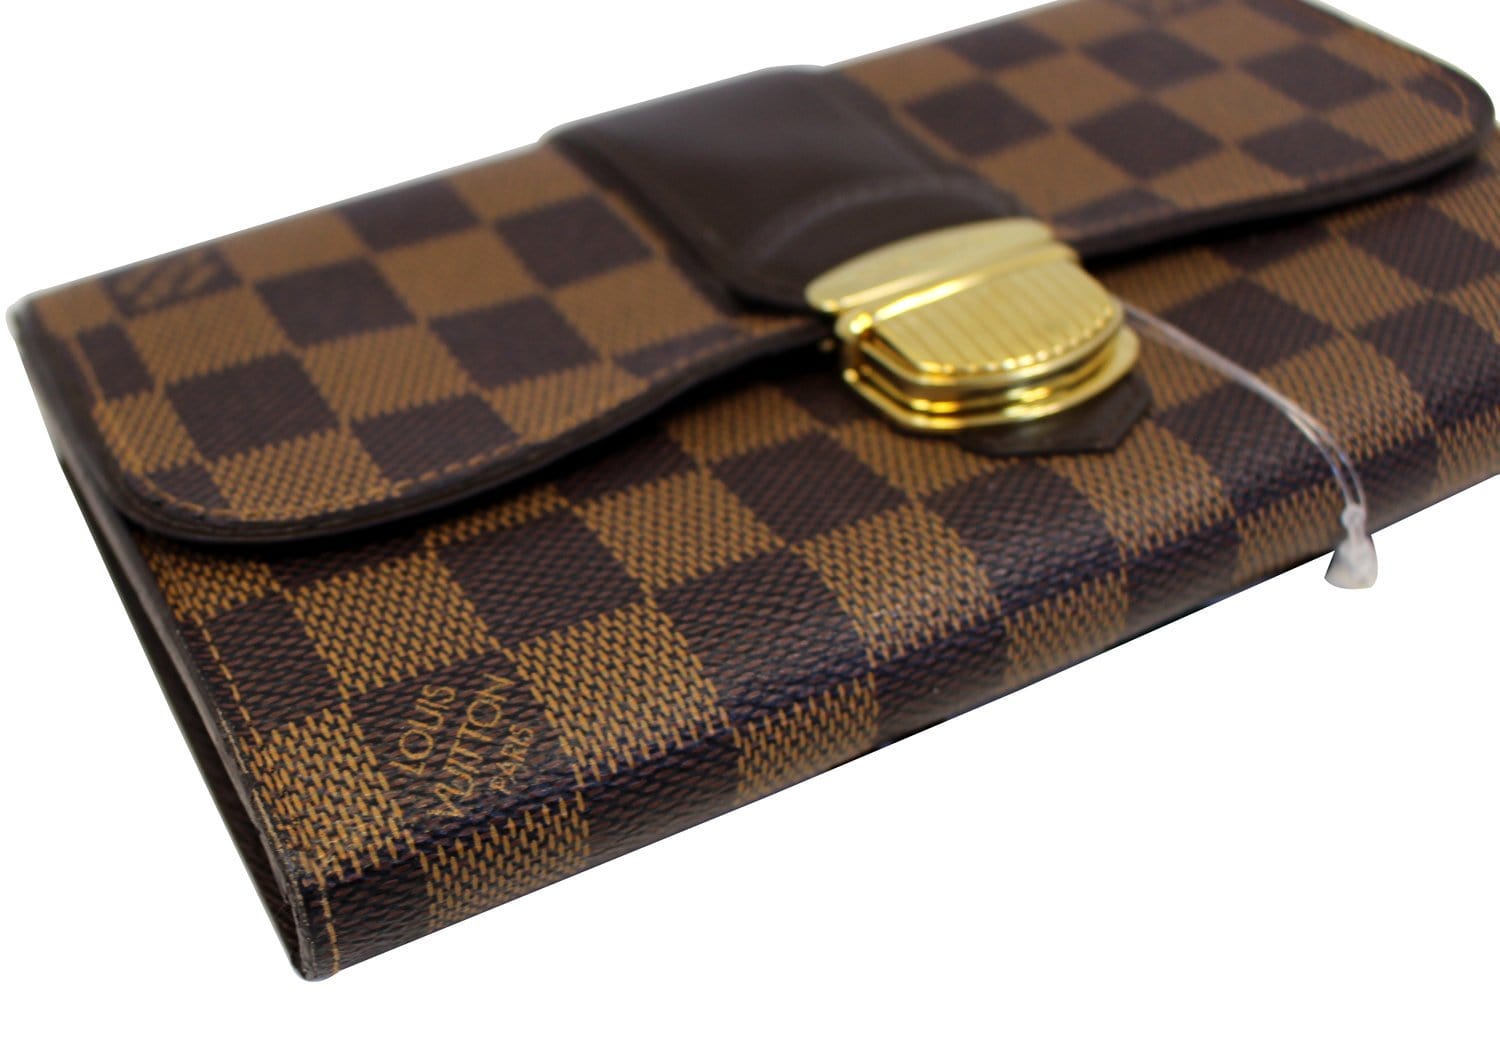 Gucci, Bags, Authentic Louis Vuitton Portefeuille Sistina Long Wallet  Damier Ebene Brown